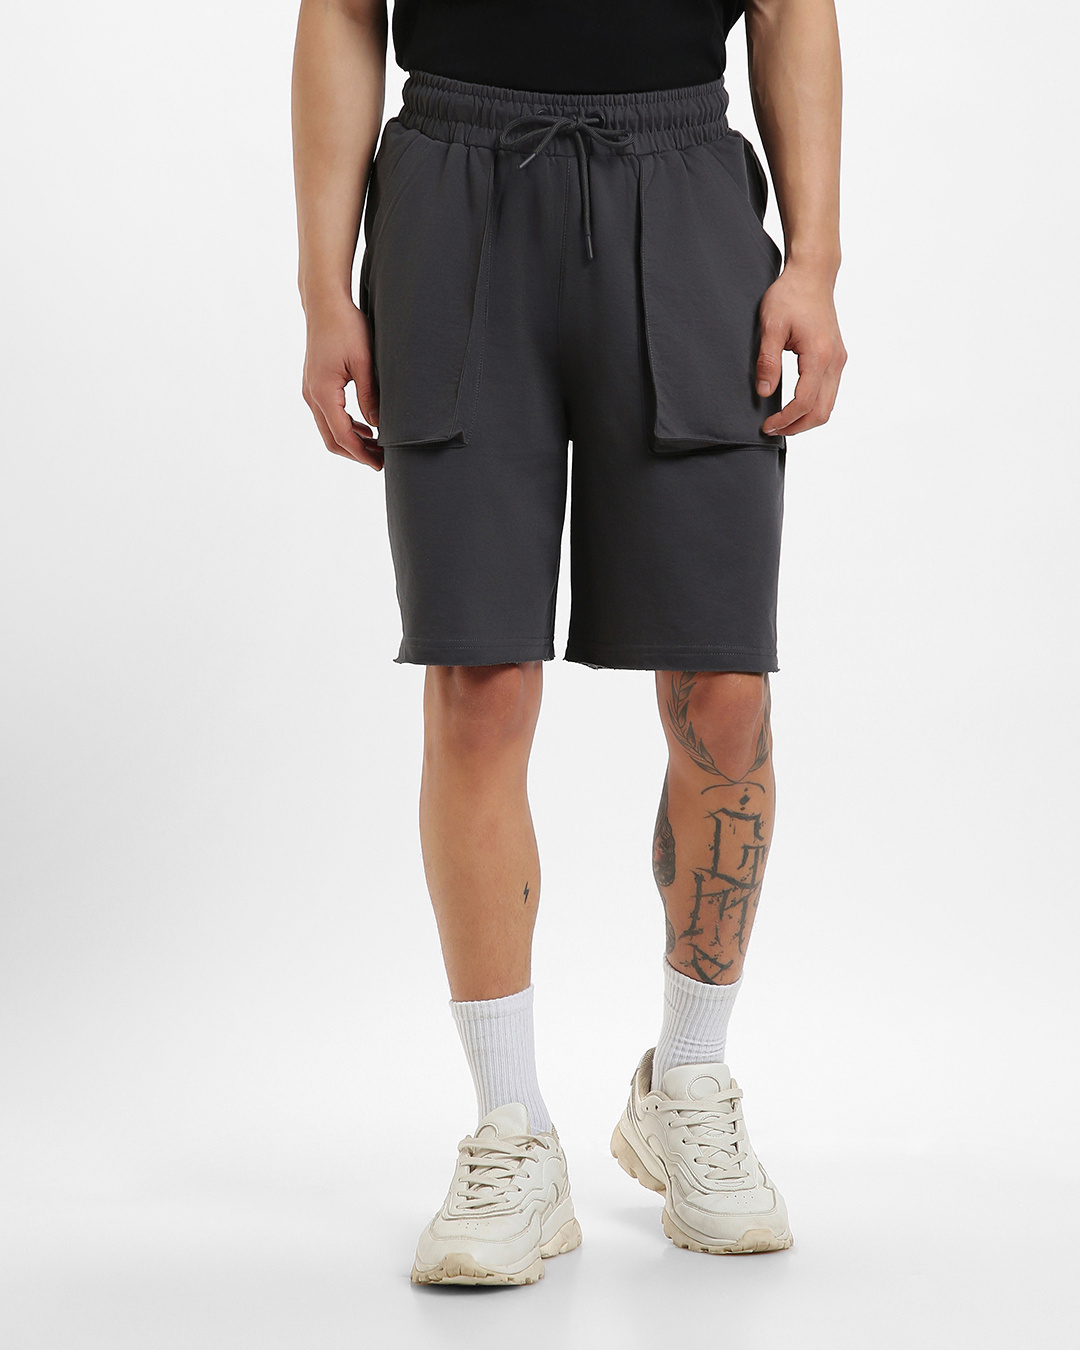 Buy Men's Grey Oversized Shorts Online at Bewakoof